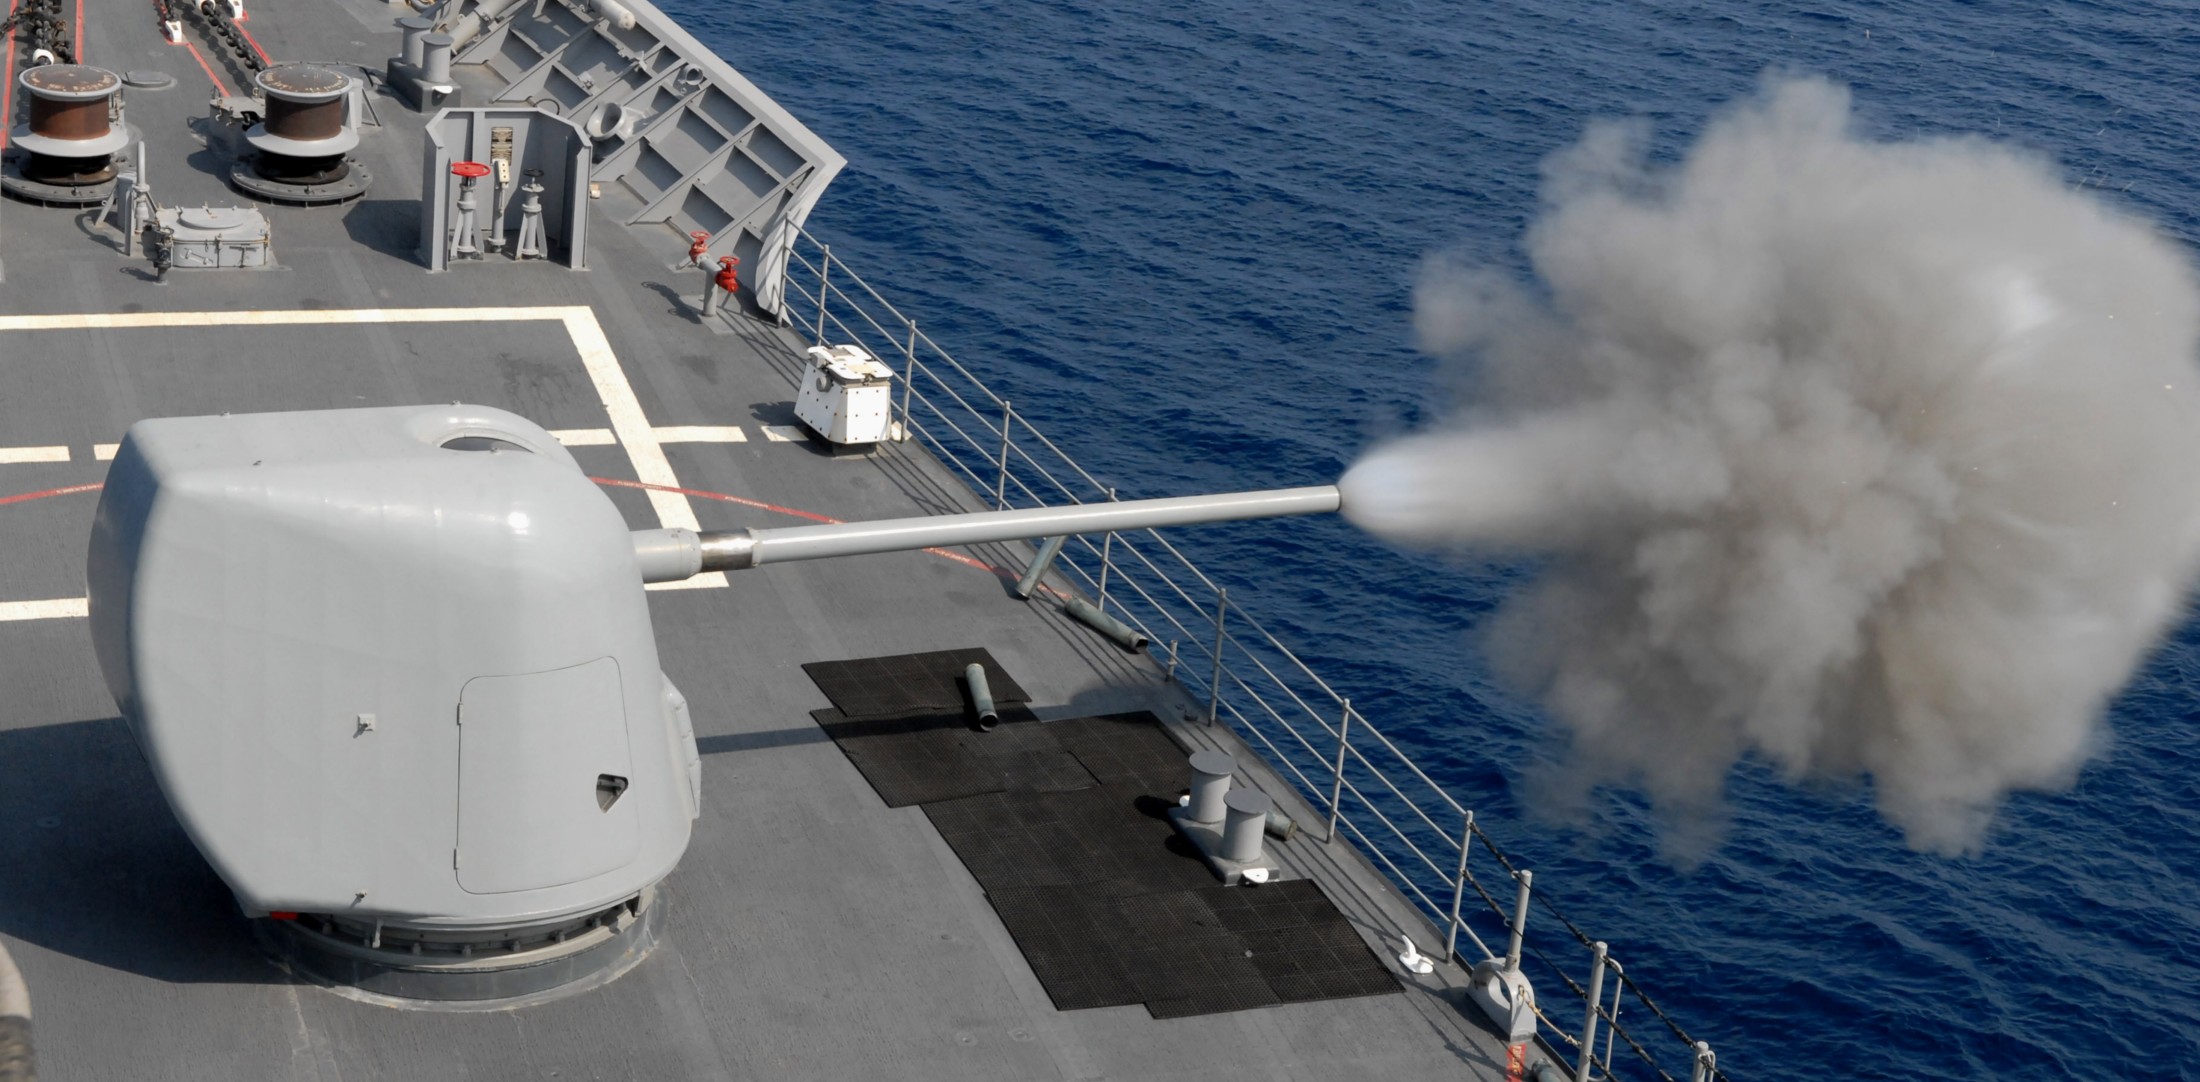 cg-62 uss chancellorsville ticonderoga class guided missile cruiser aegis us navy mk.45 gun fire 16